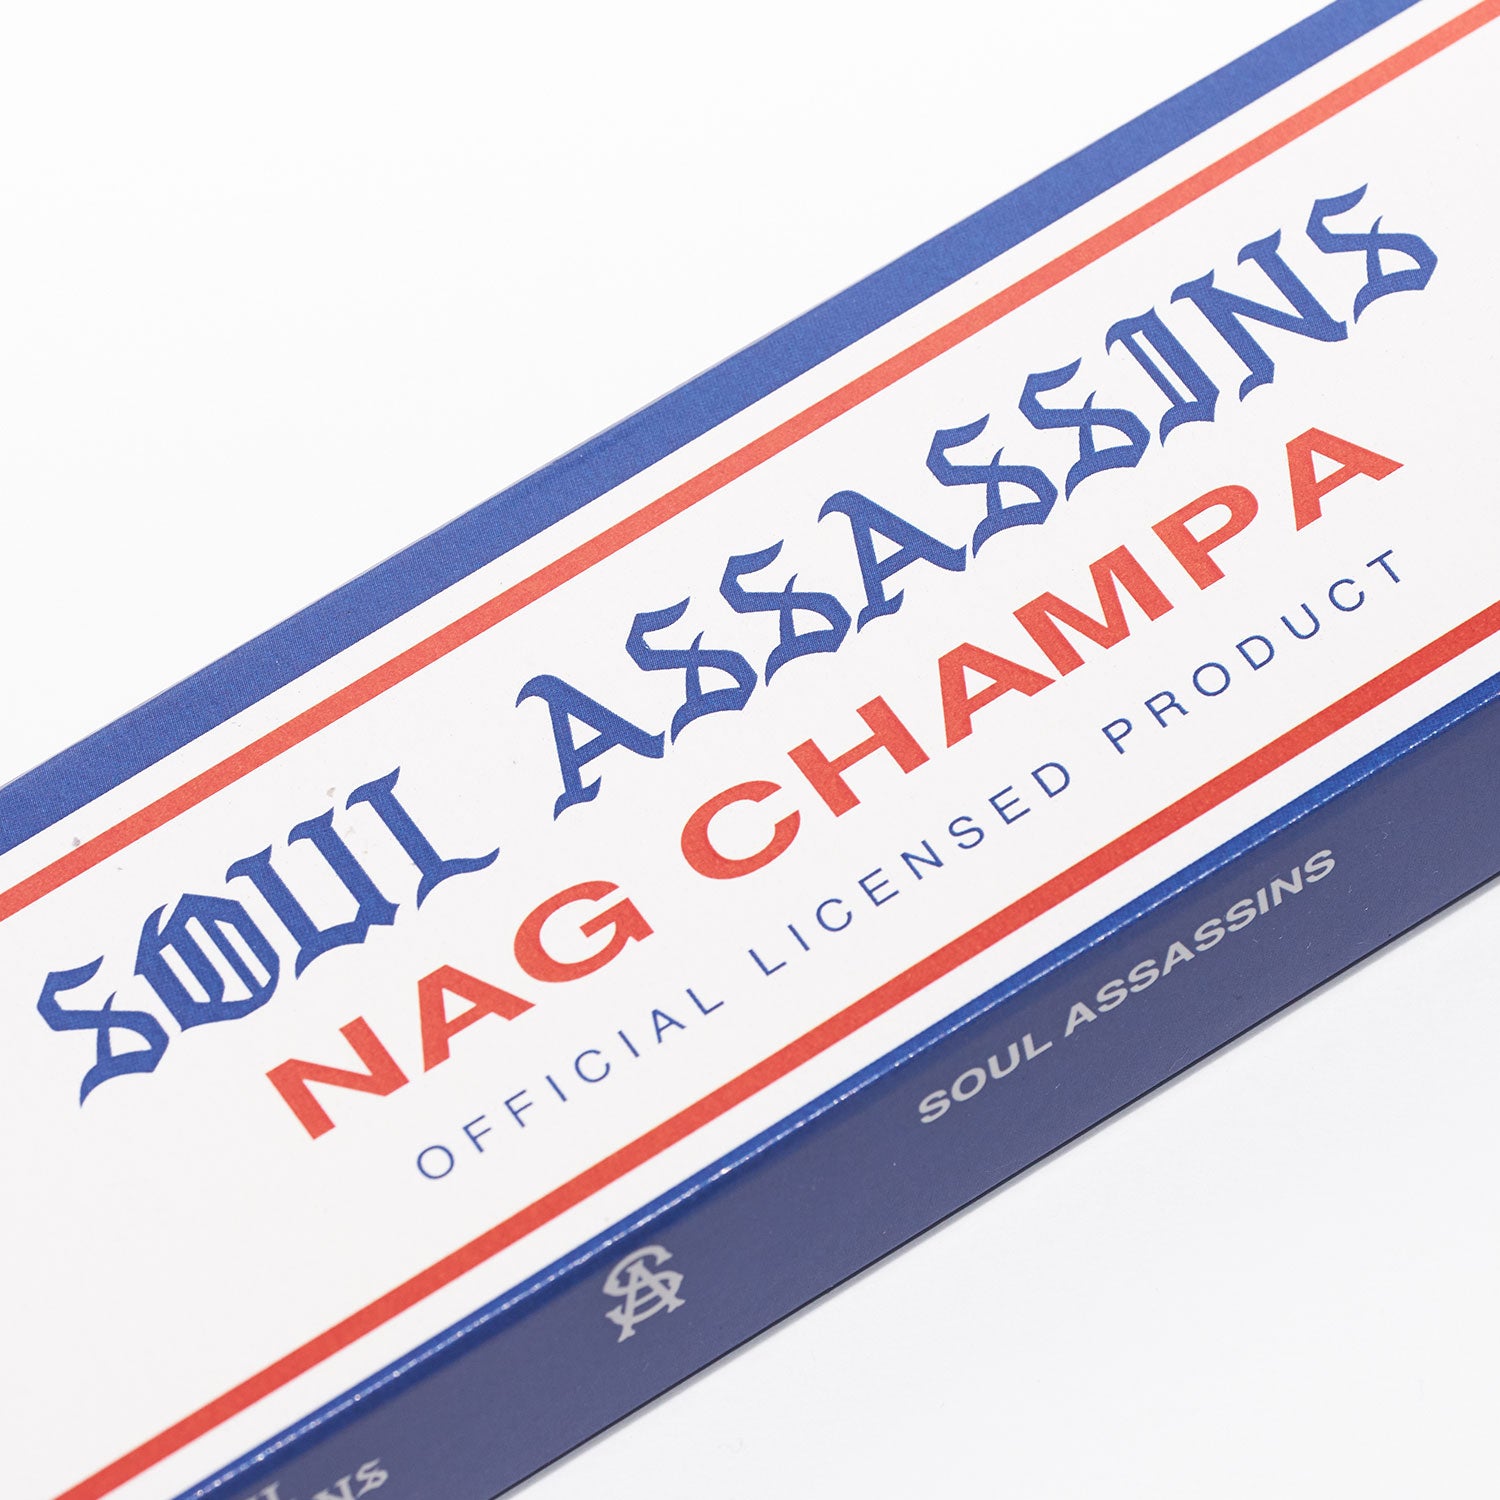 SOUL ASSASSINS CUSTOM NAG CHAMPA – Soul Assassins